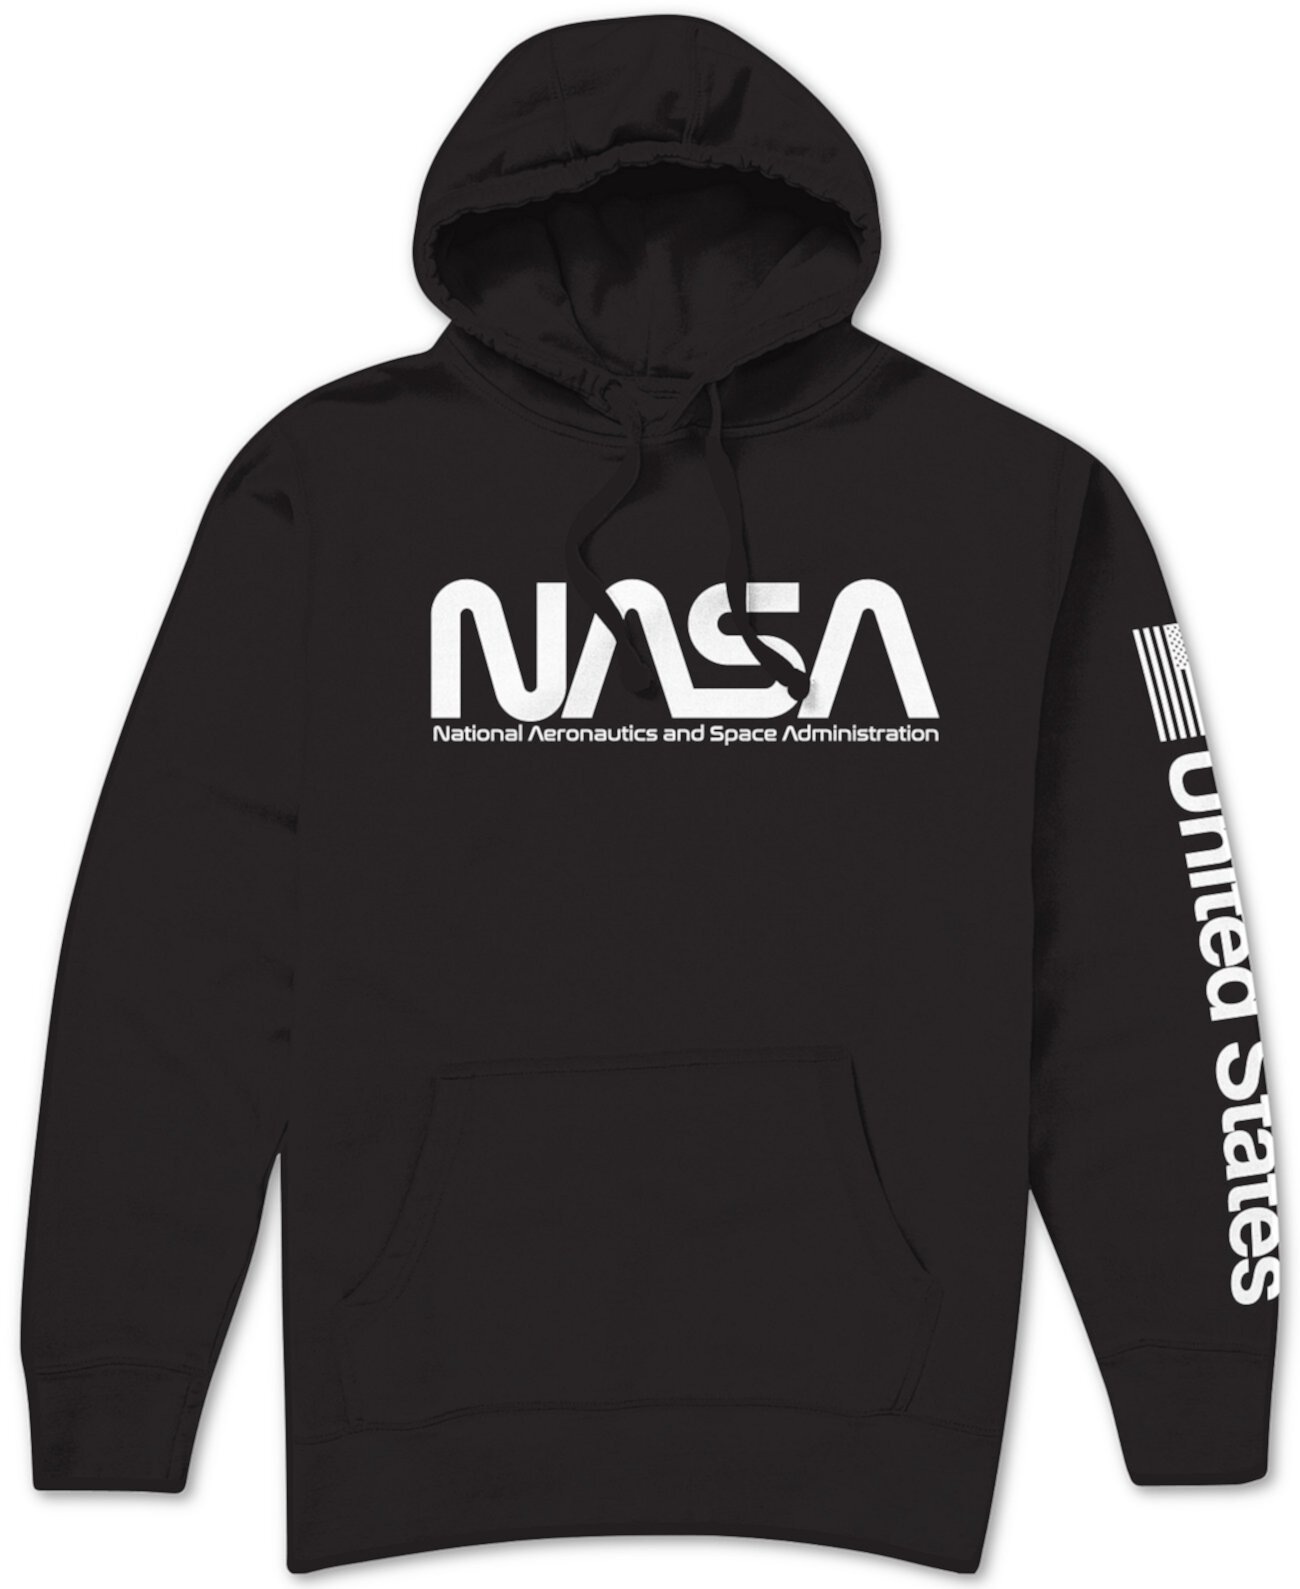 Мужская толстовка с капюшоном с логотипом NASA Hybrid